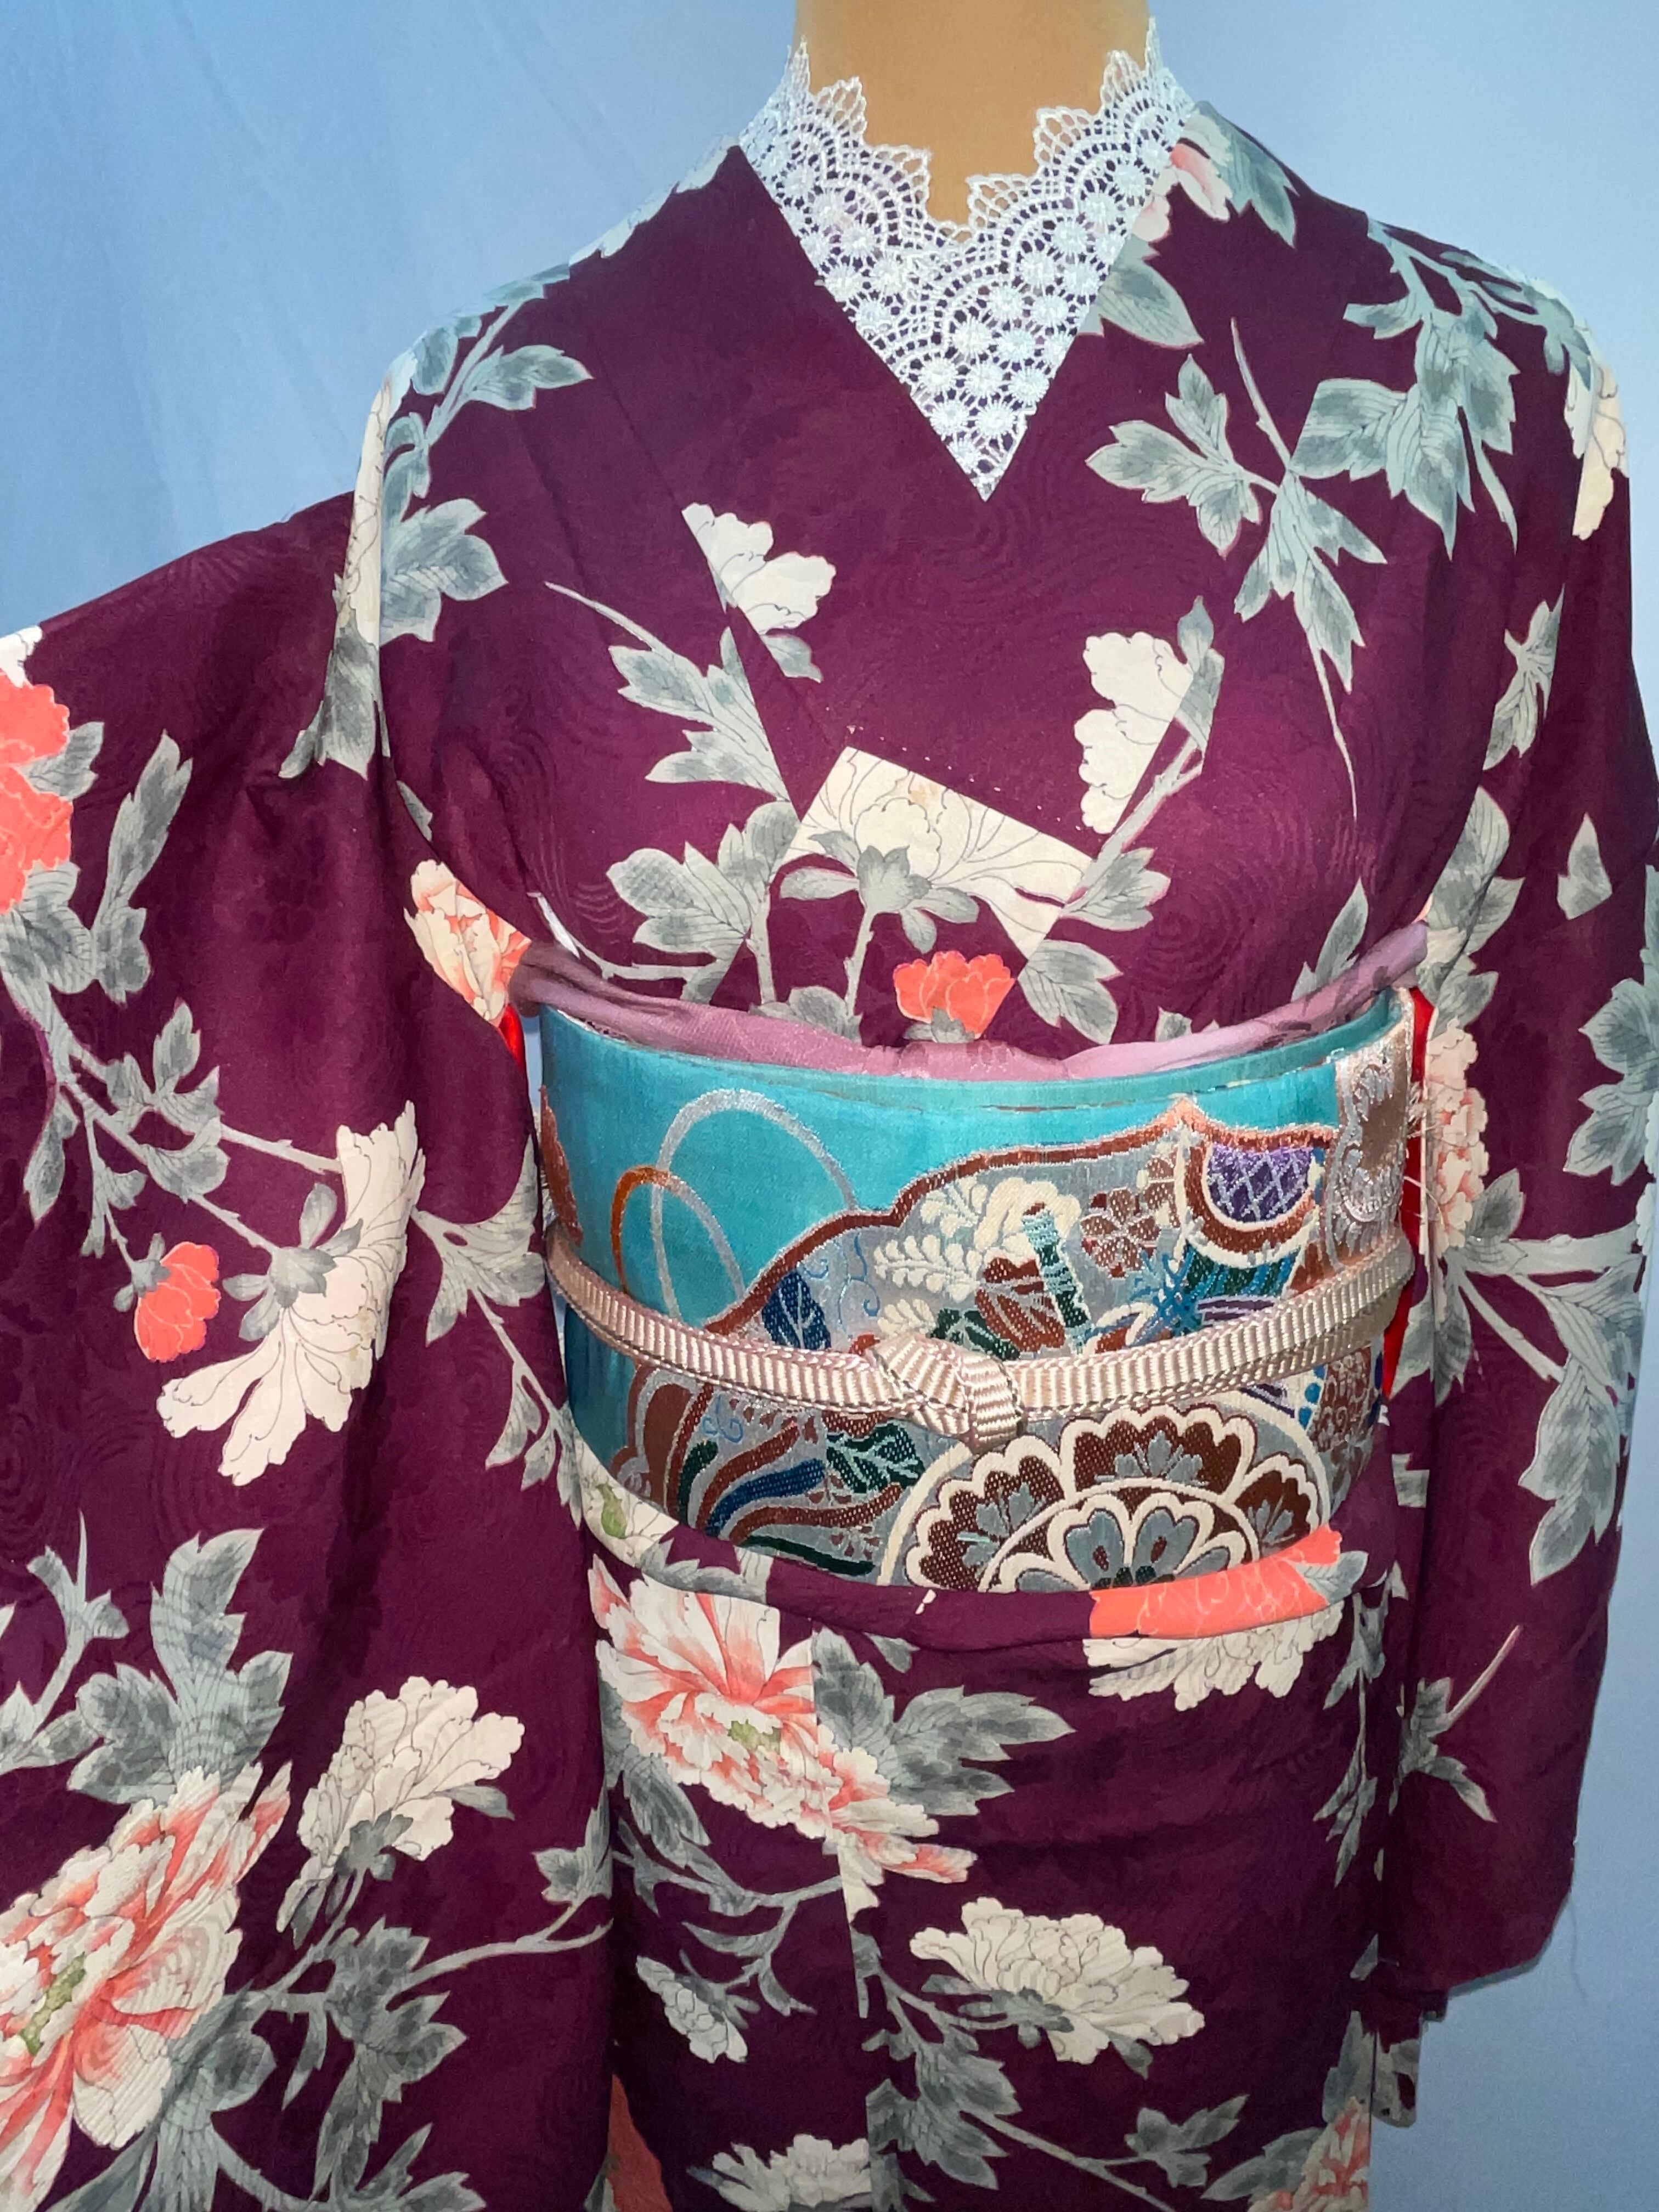 アンティーク着物 紫 牡丹 | アンティーク着物 侘びすけ wabisuke モダン おしゃれな着物コーデ 大人の着物 powered by BASE